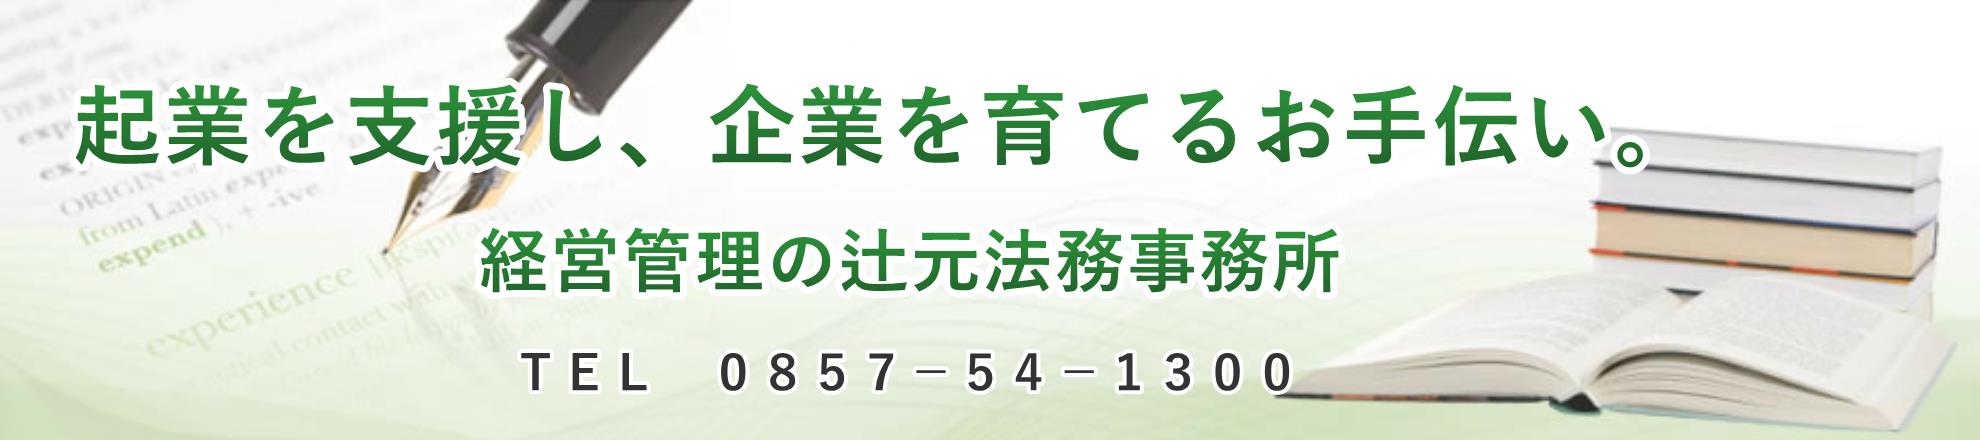 鳥取県の出退勤アプリ導入キャンペーン